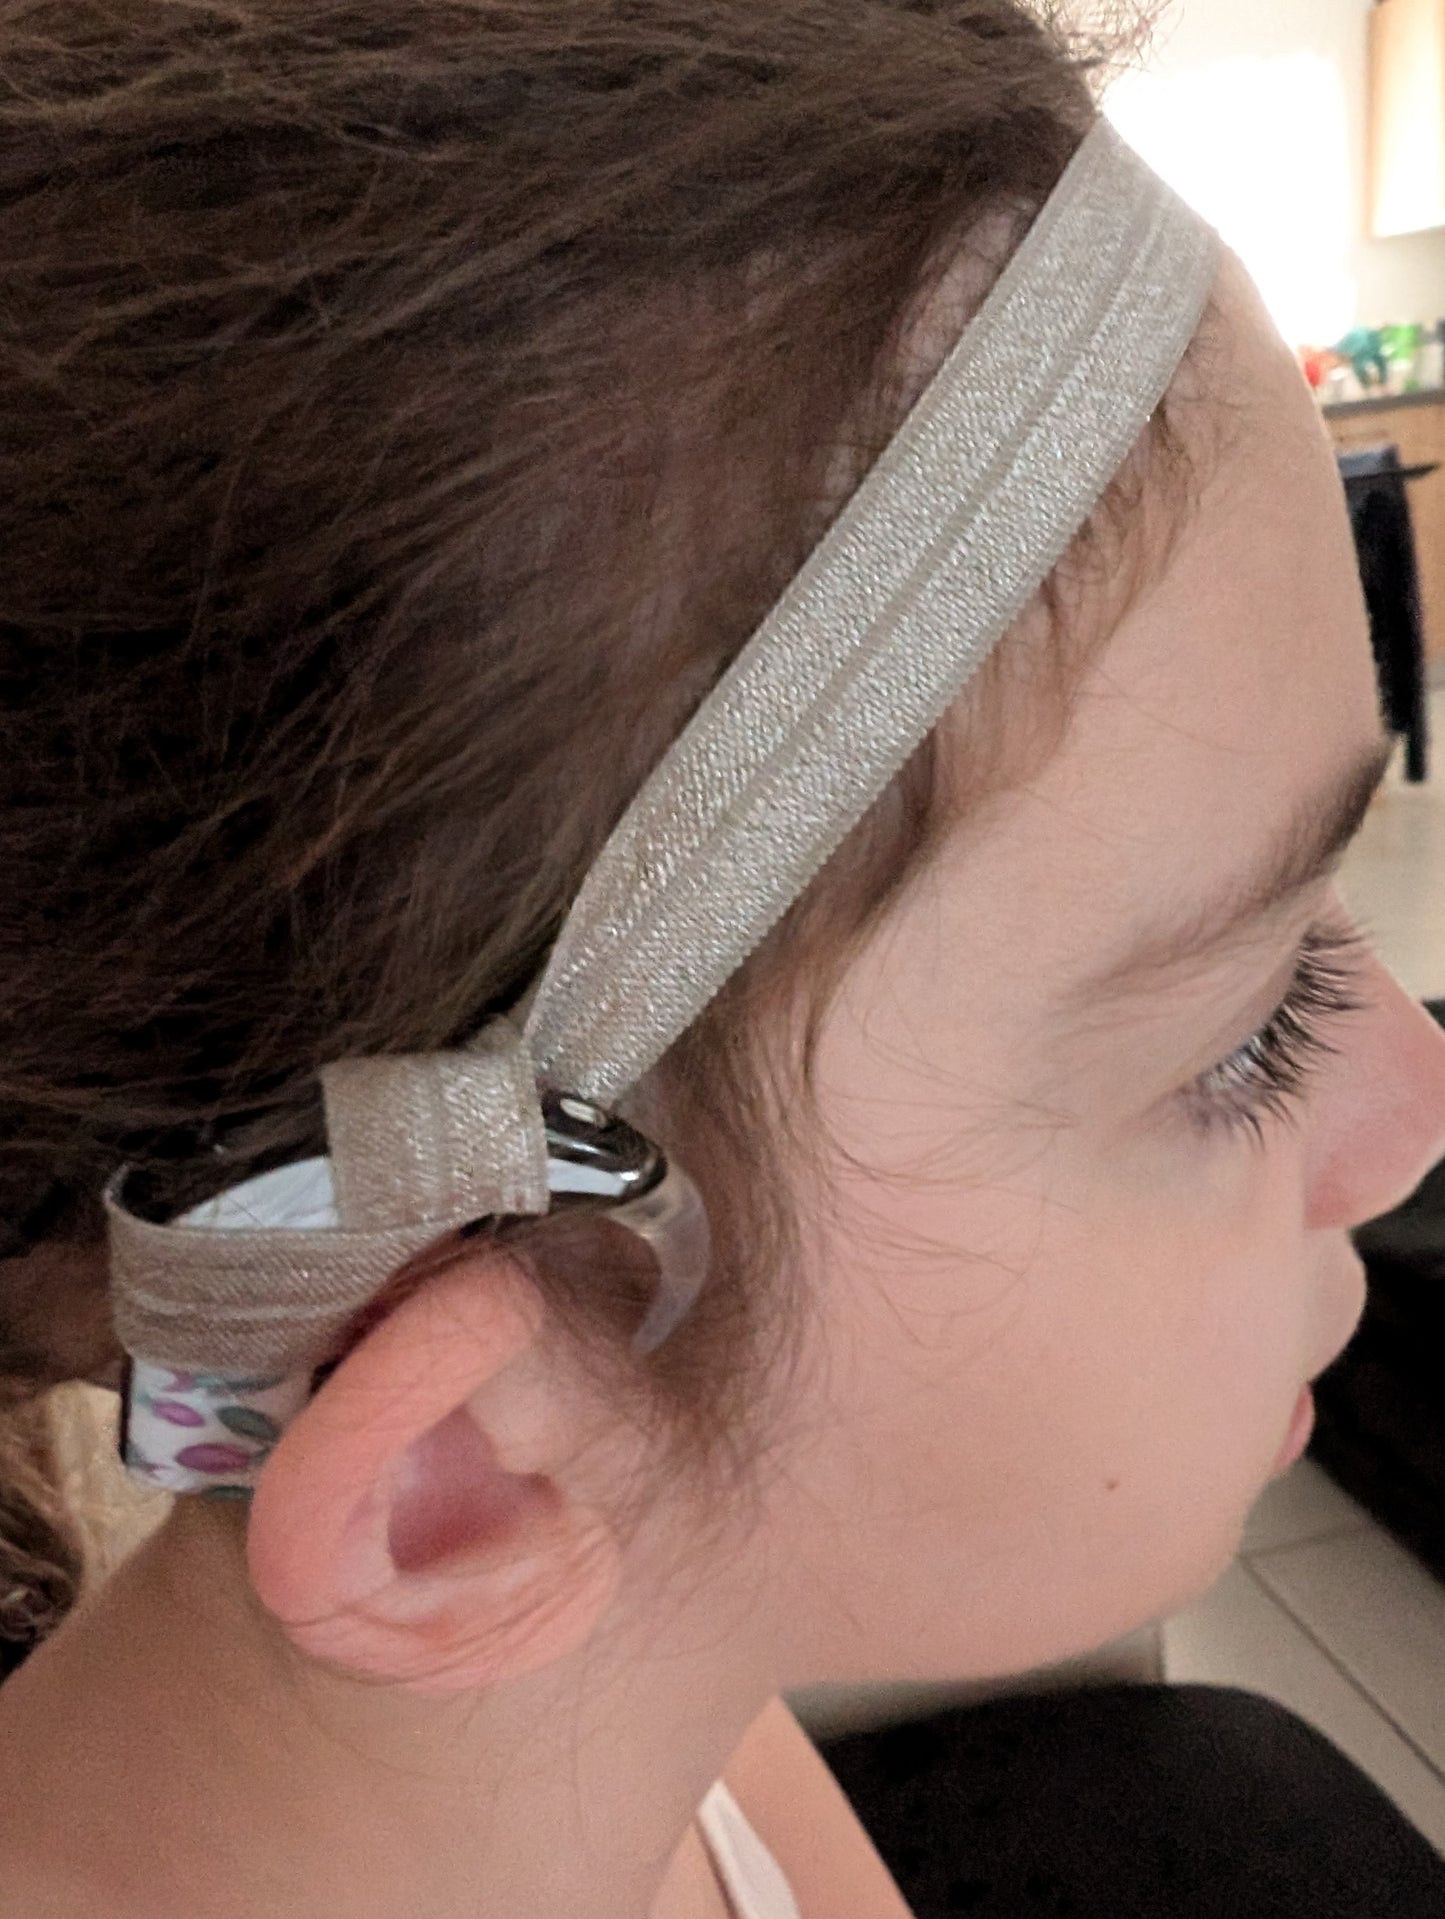 Bandeaux satin unis pour implant  cochléaire et prothèse auditive taille ajustable ou classique serre tête anti perte implant